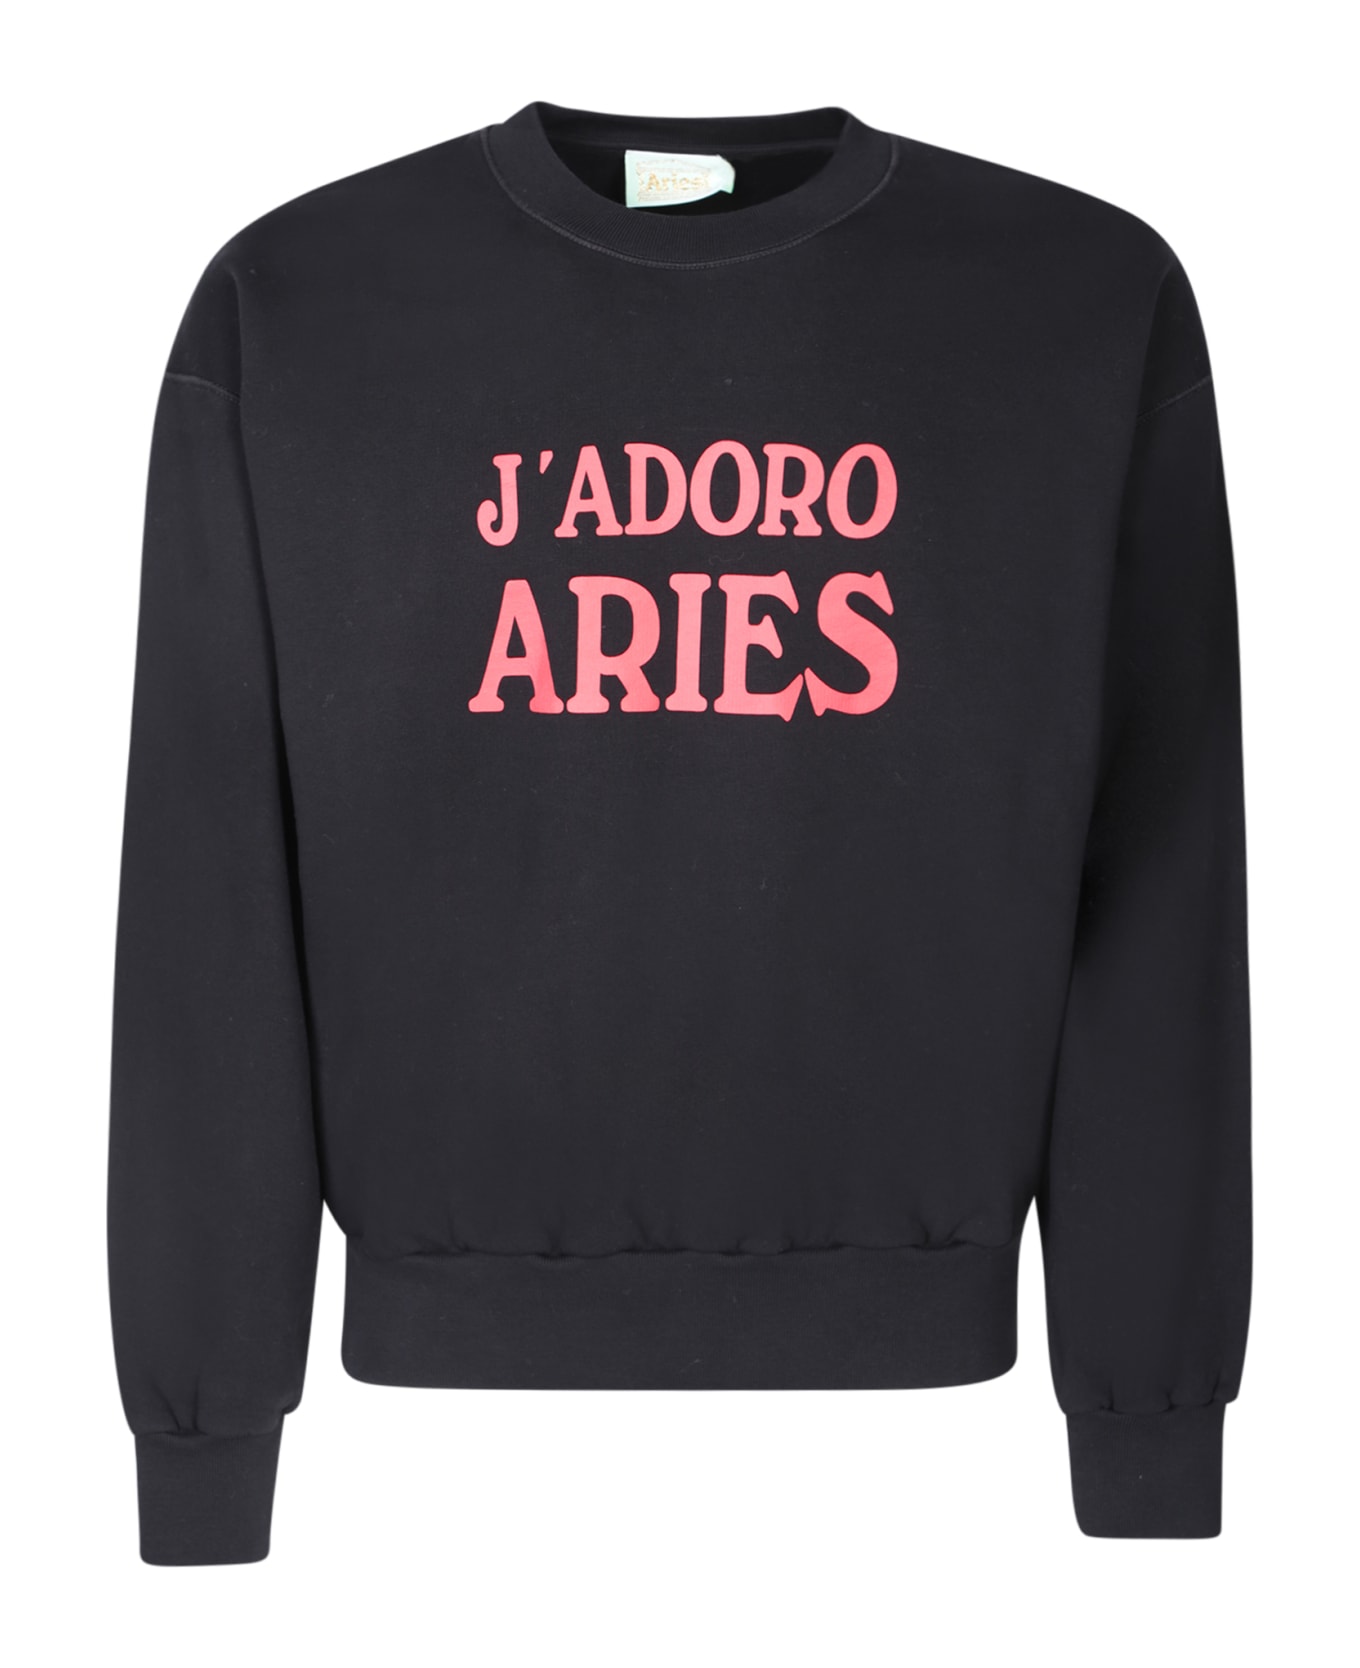 Aries J'adoro Black Sweatshirt - Black